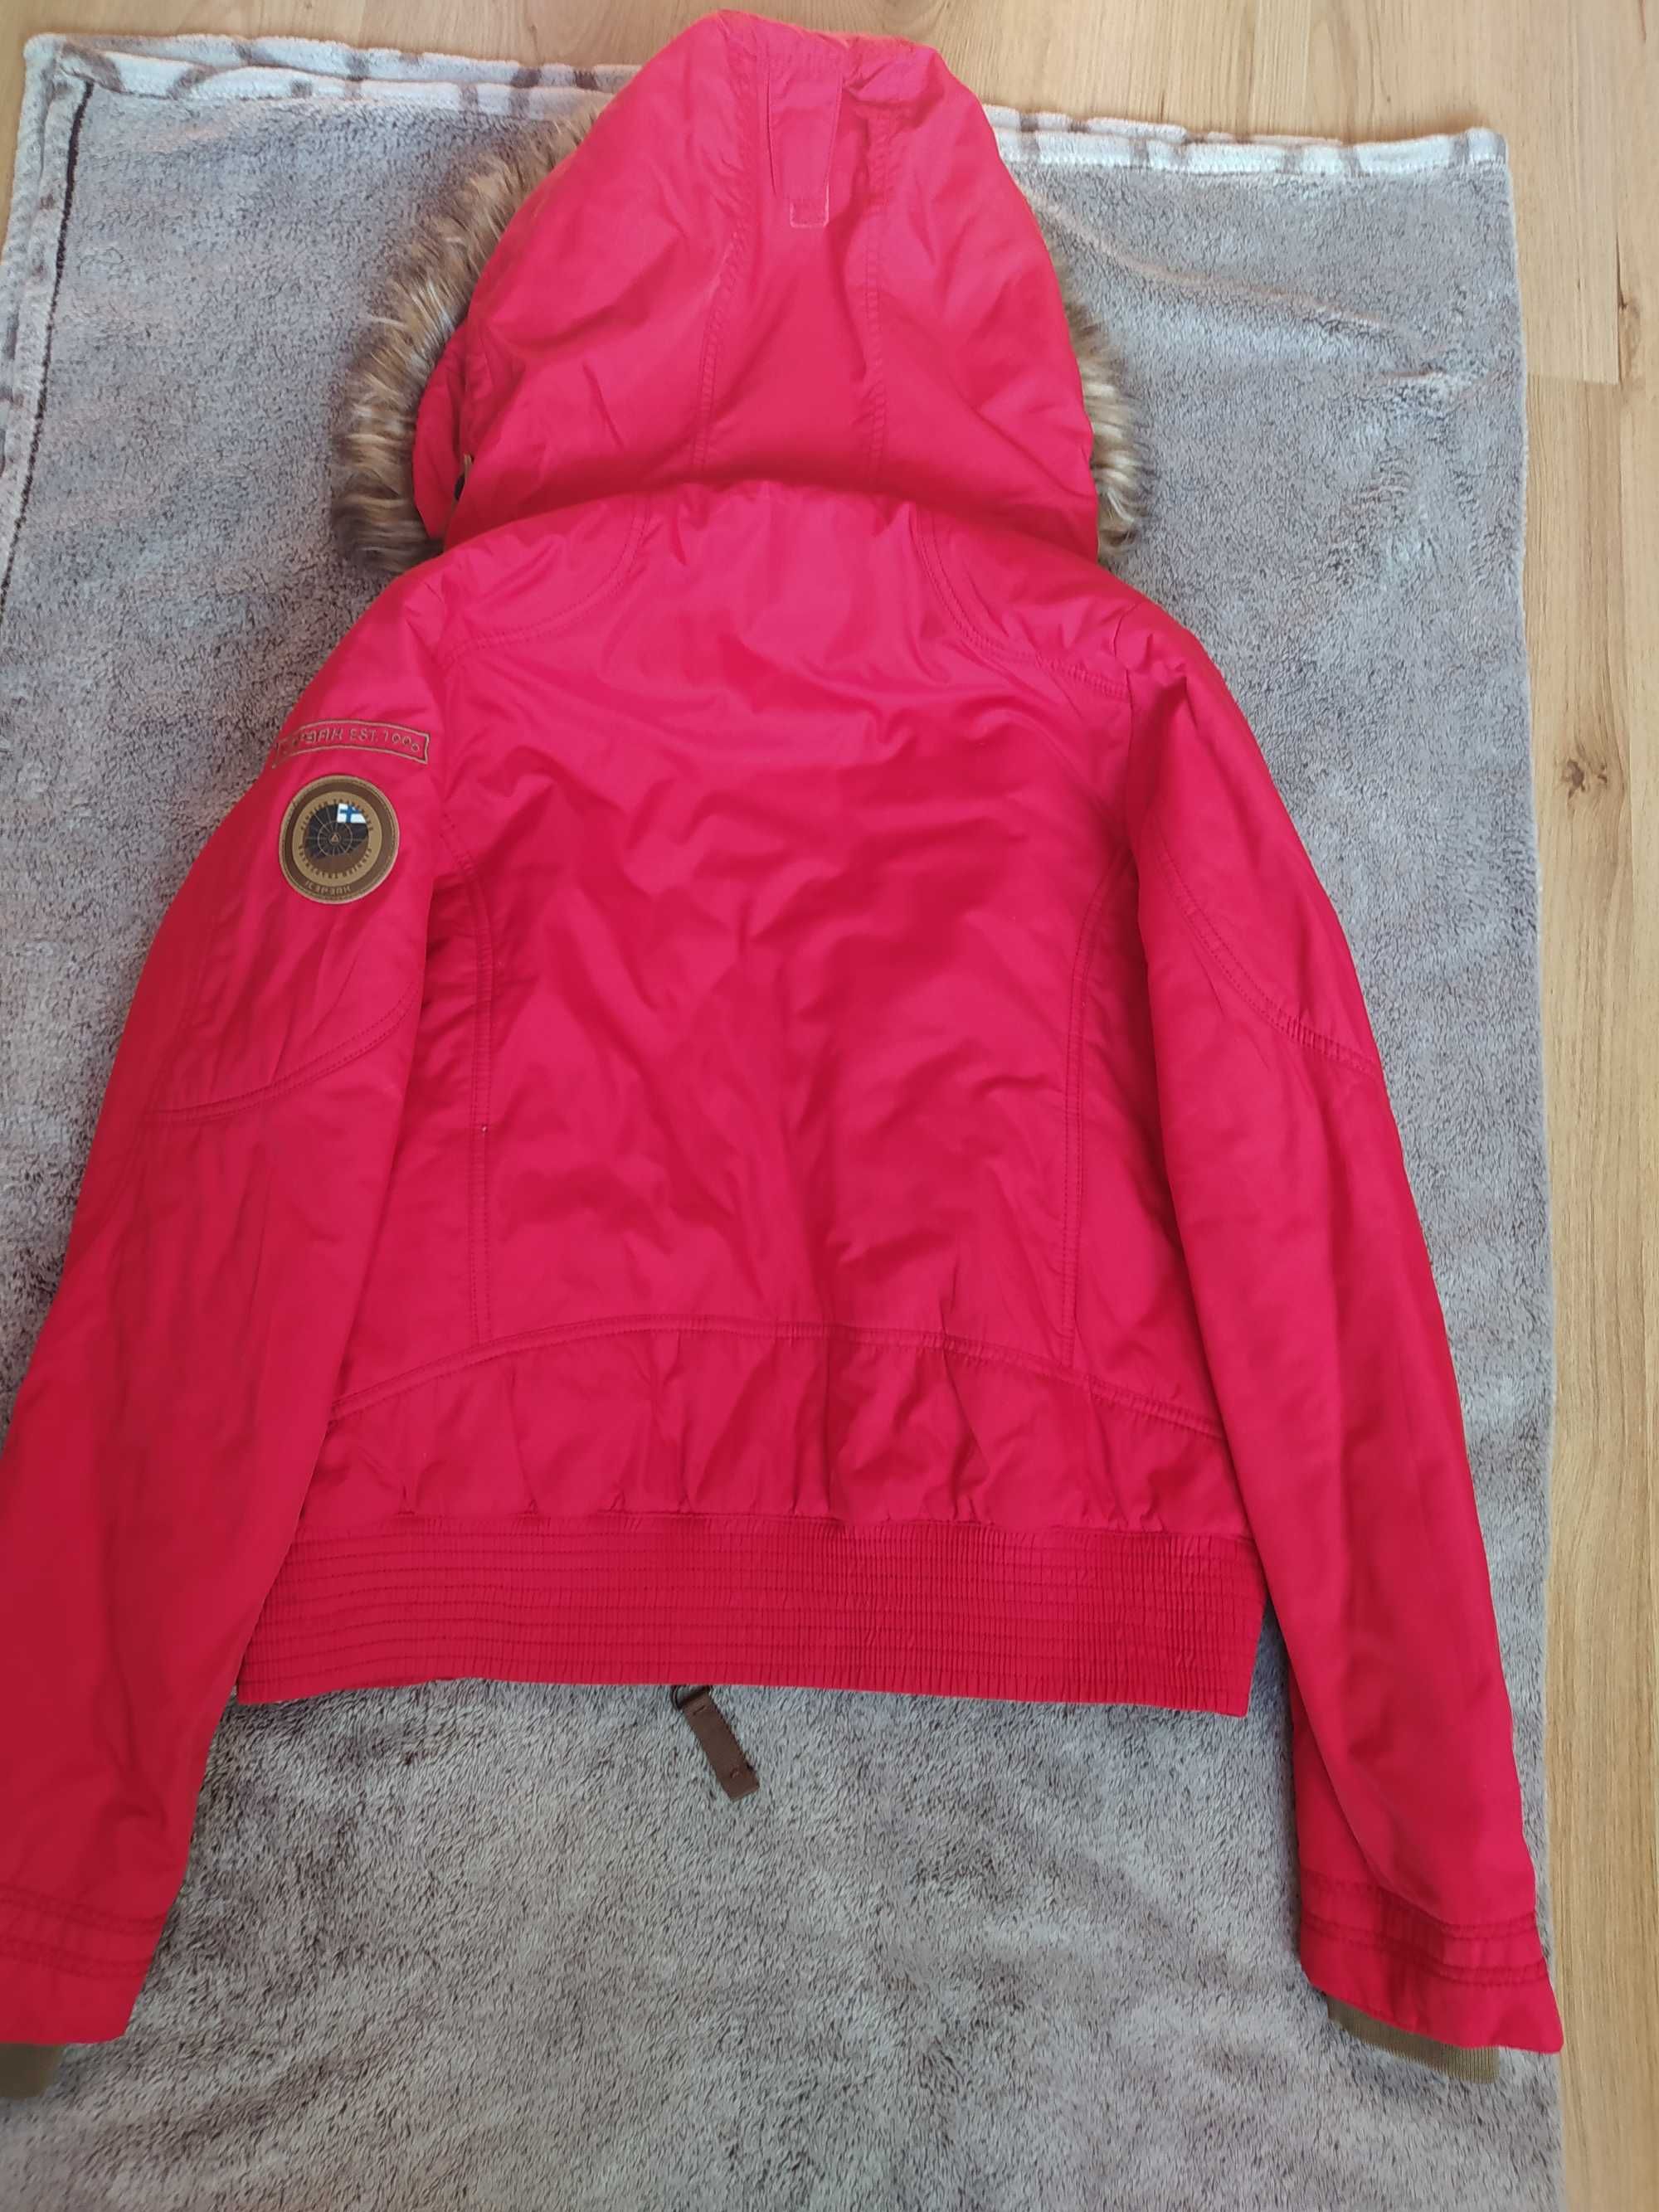 Куртка женская утепленная красного цвета б/у бренда айспак